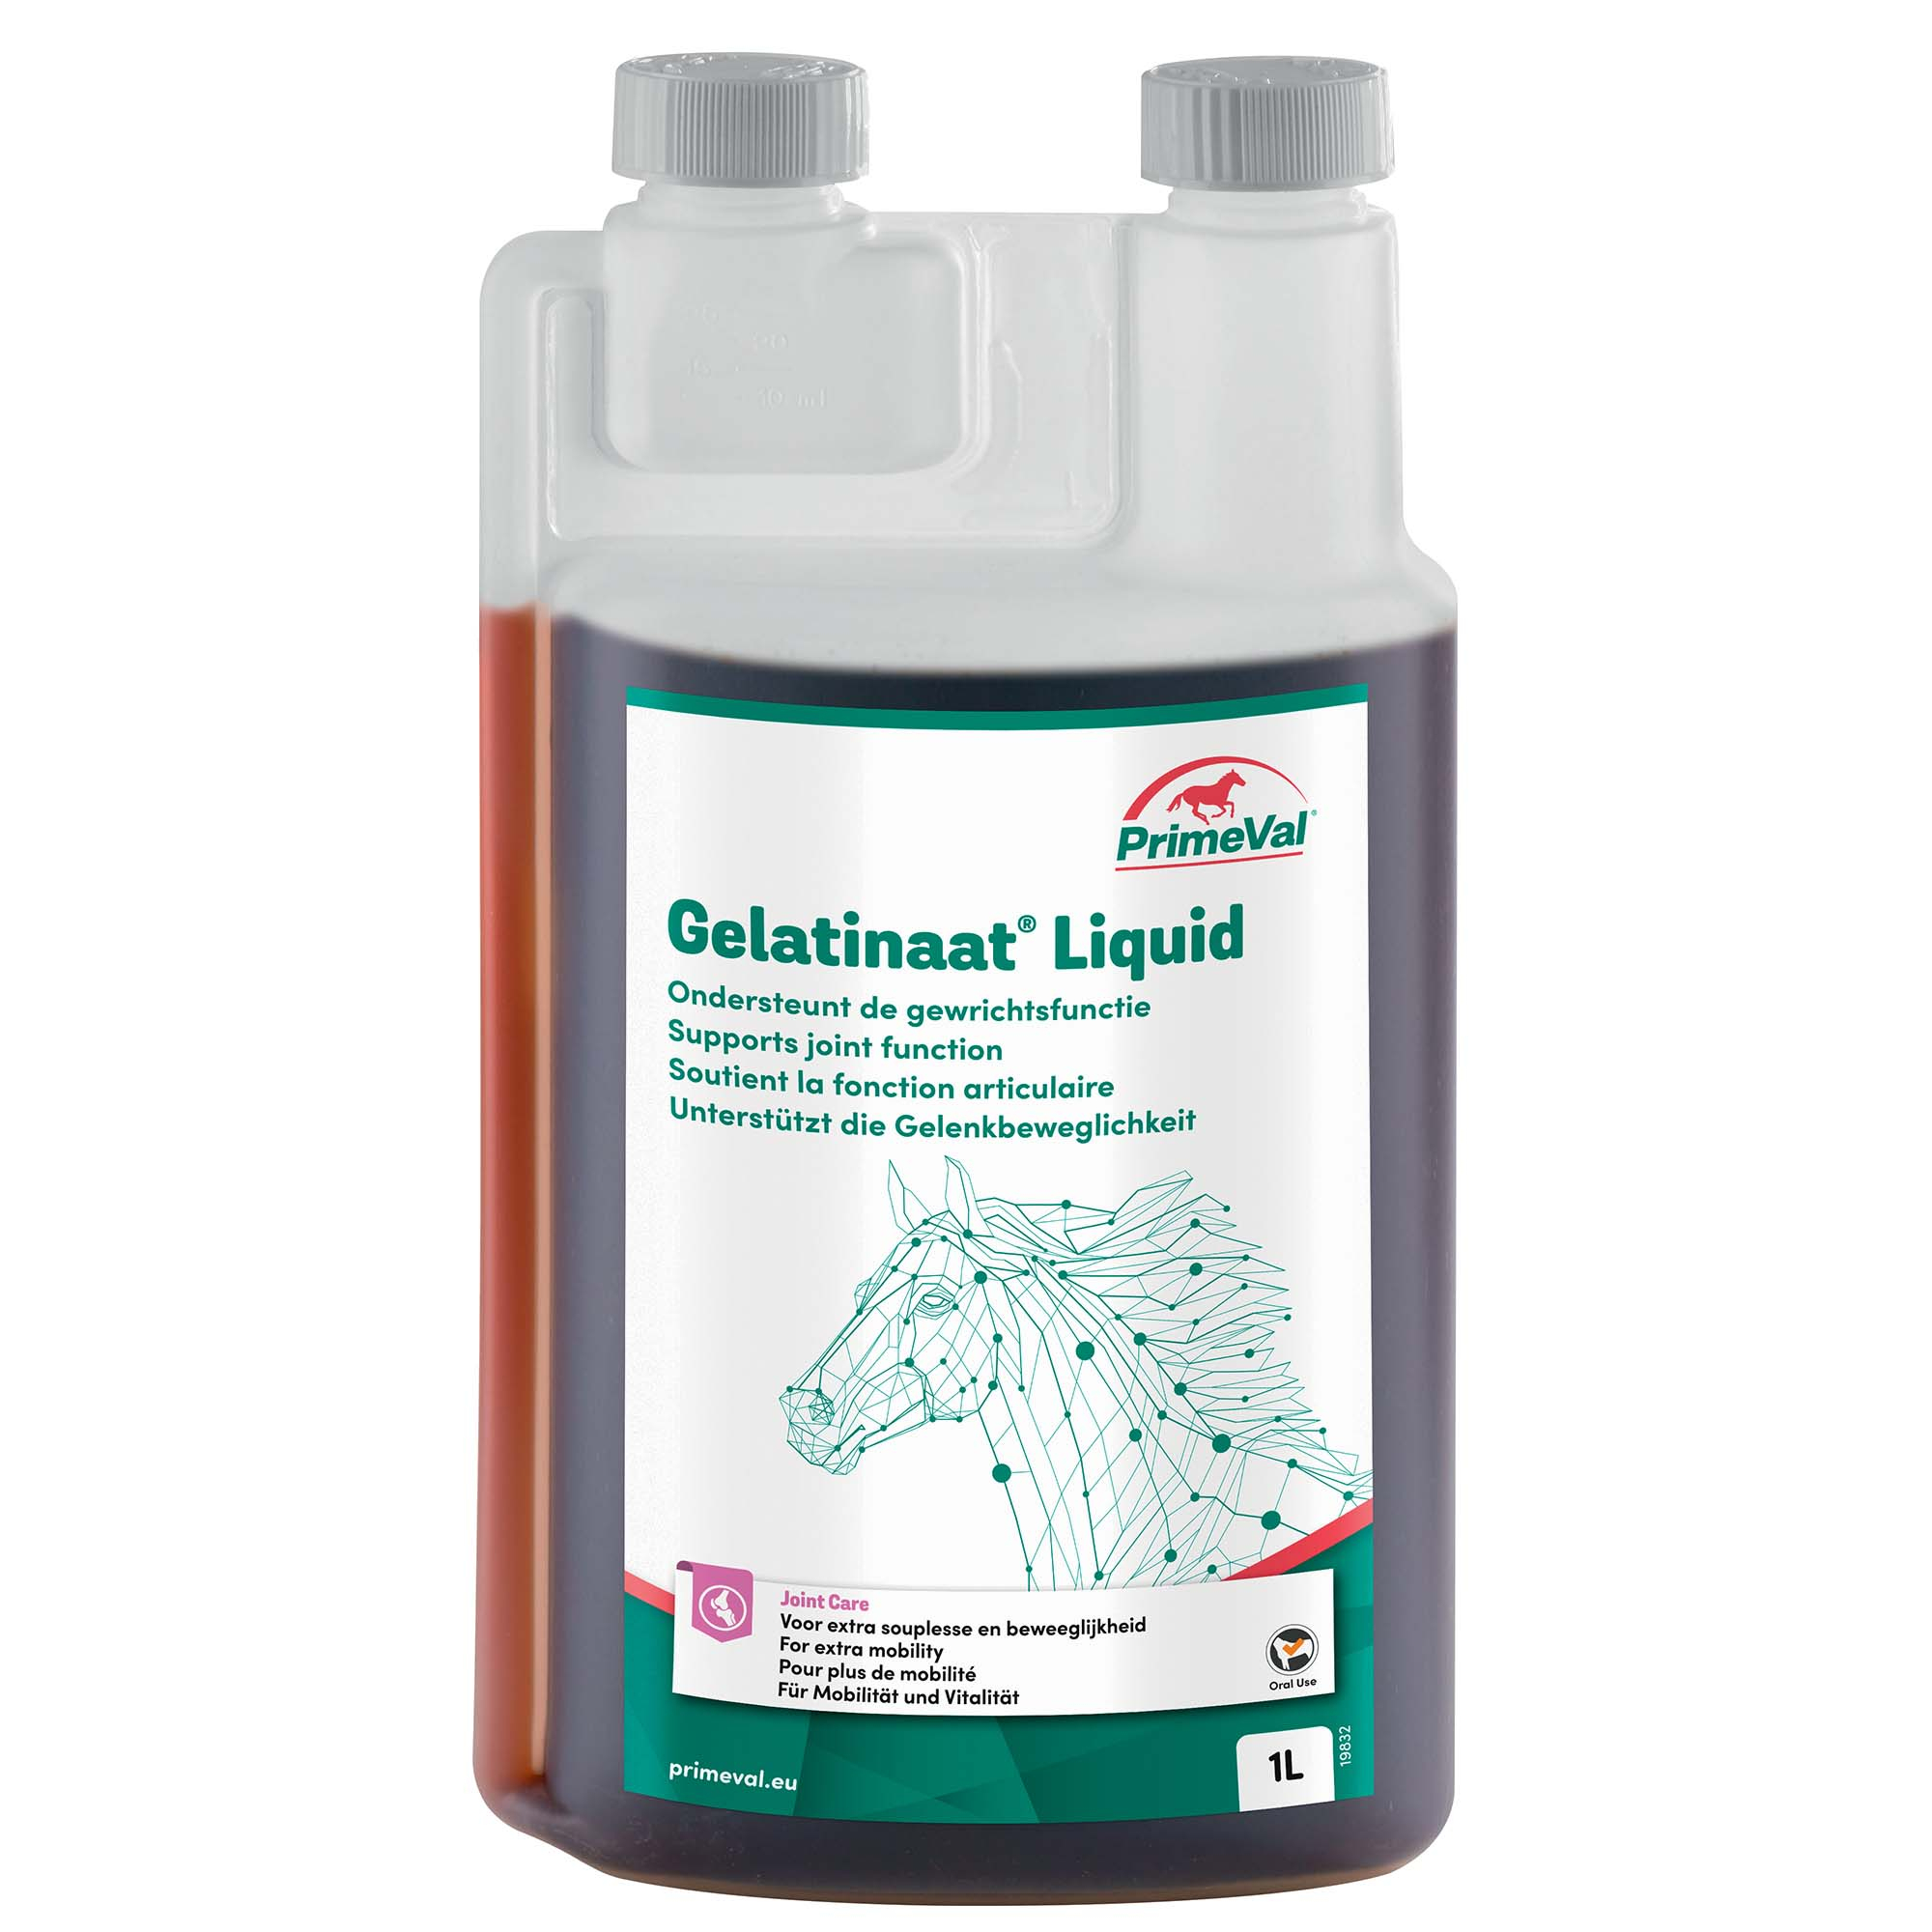 PrimeVal Gelatinaat liquid complément pour les articulation du cheval